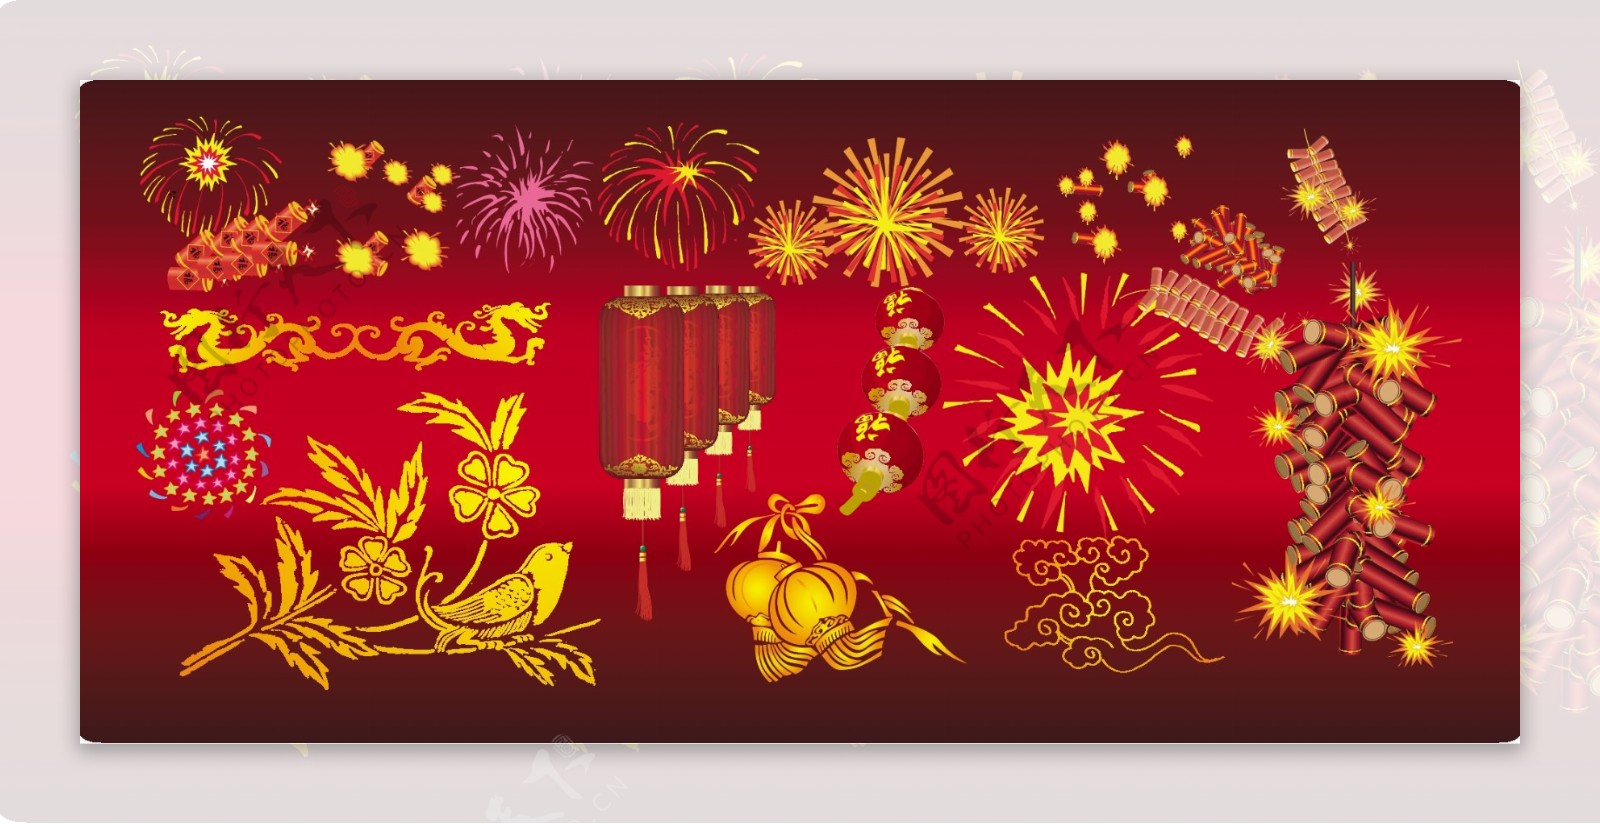 中国春节喜庆传统元素